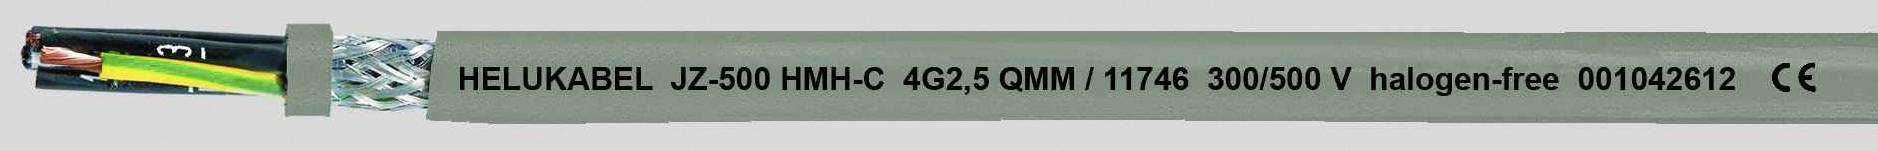 HELUKABEL JZ-500 HMH-C Steuerleitung 3 G 2.50 mm² Grau 11745-1000 1000 m